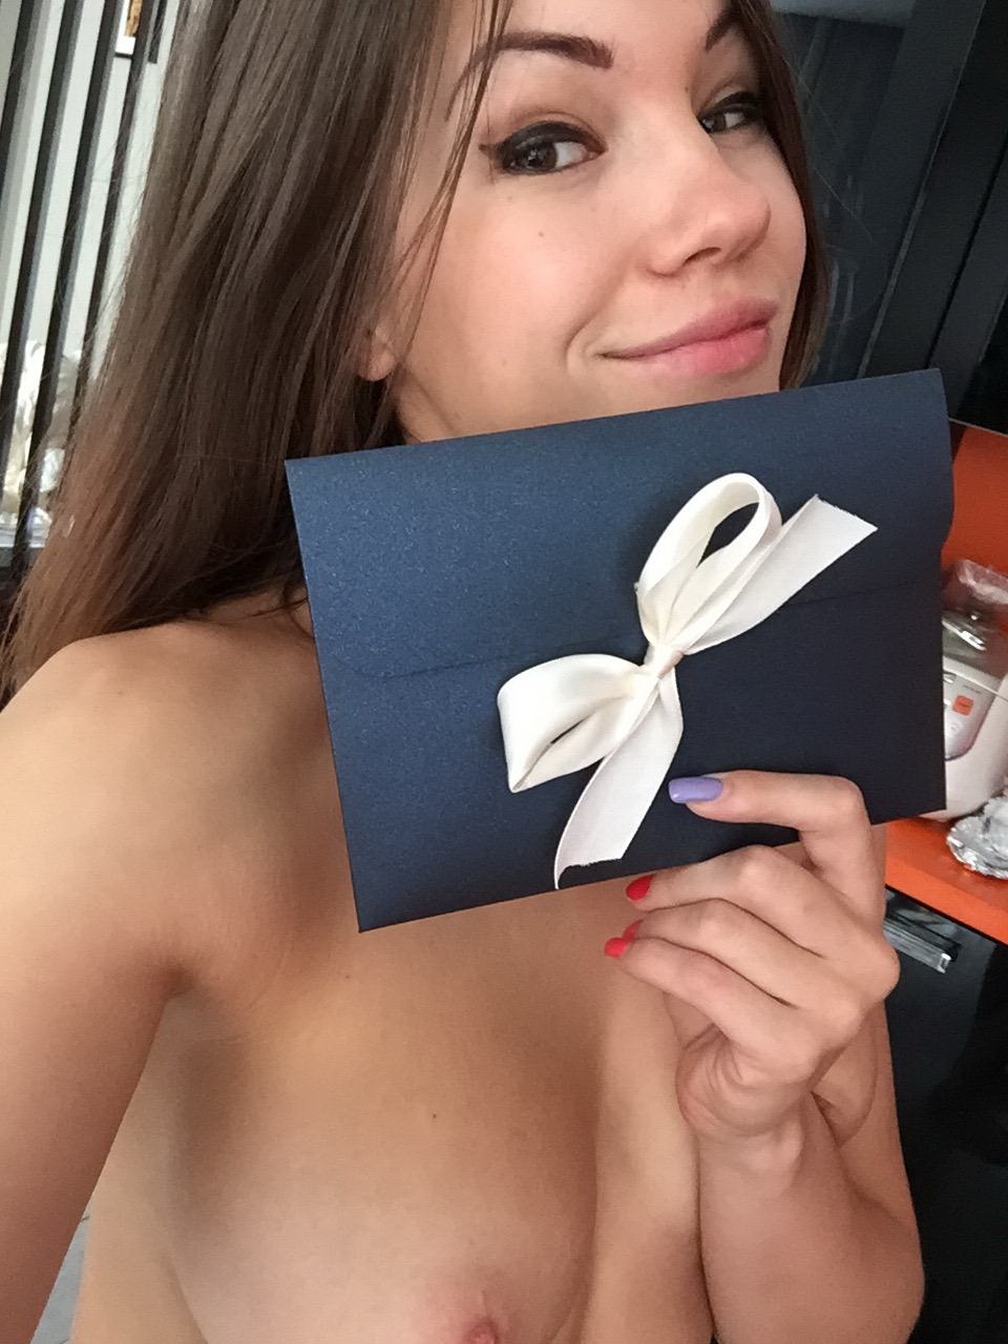 http://dru.pl/blog/stuff/wysportowana-dziewczyna/sexy-fit-sportive-girl-naked-on-vacation-young-amateur-selfie-54.jpg